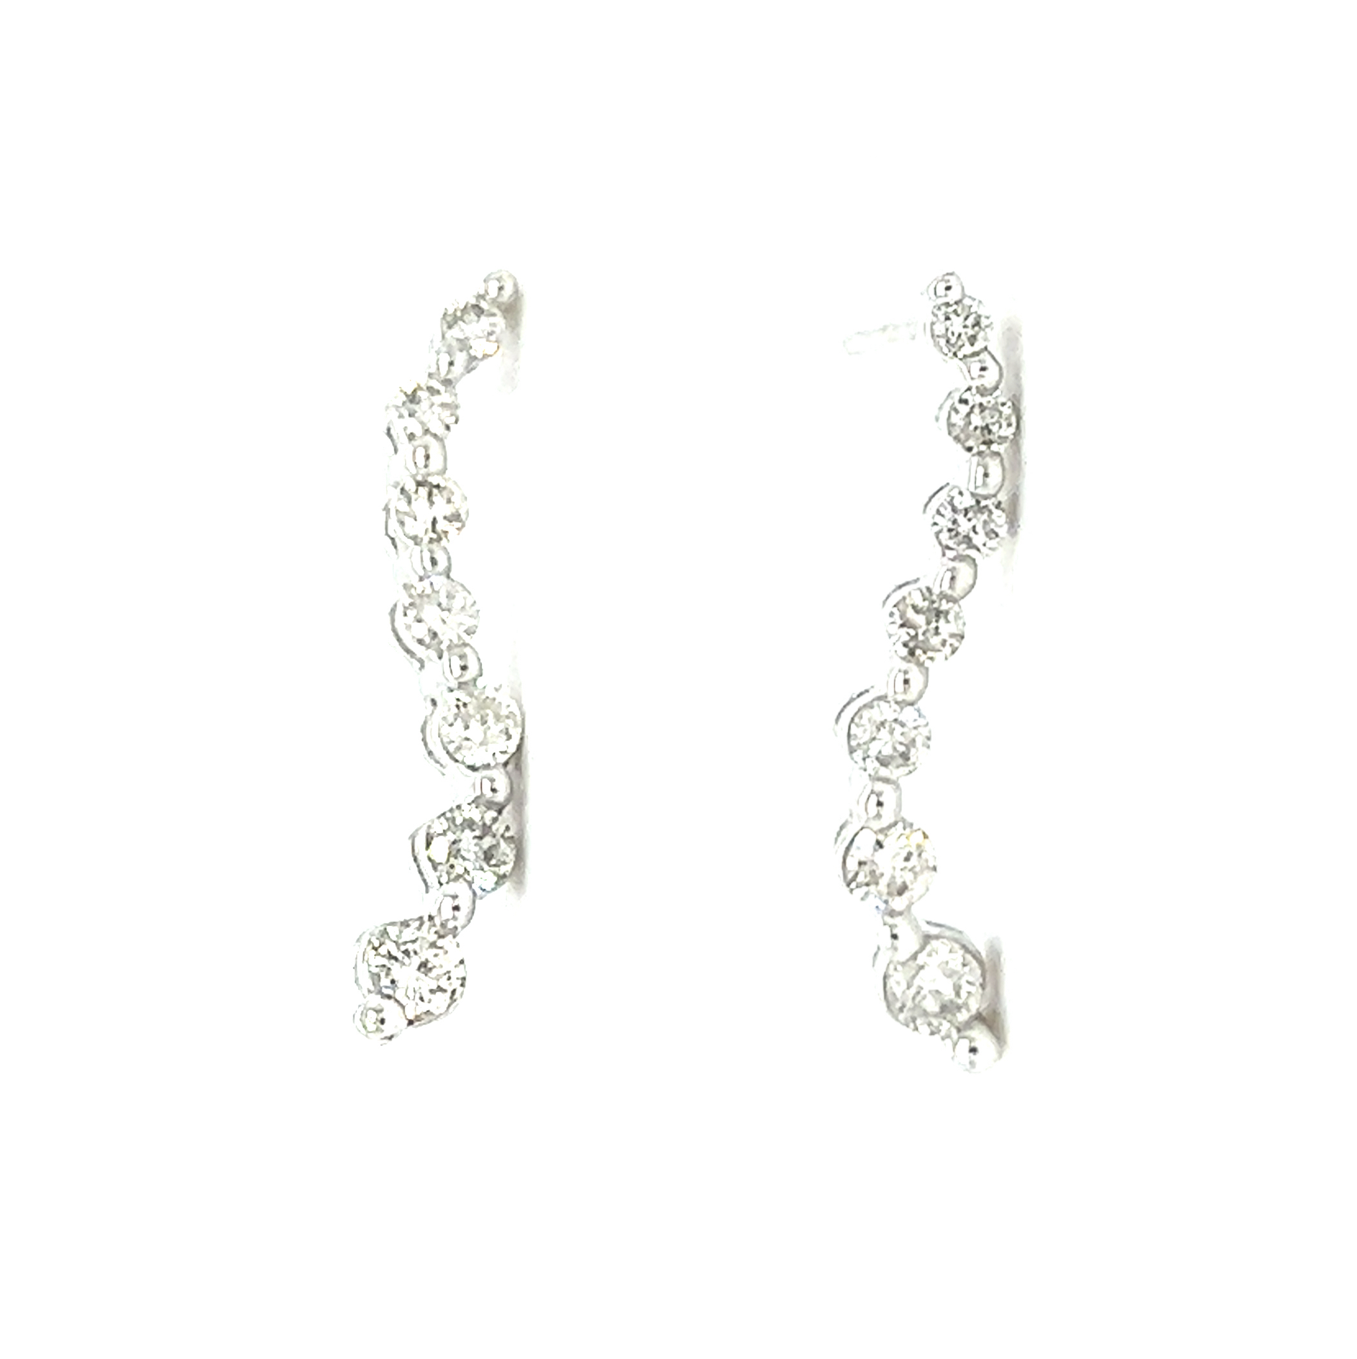 Diamond Wave Earrings in 14k White Gold